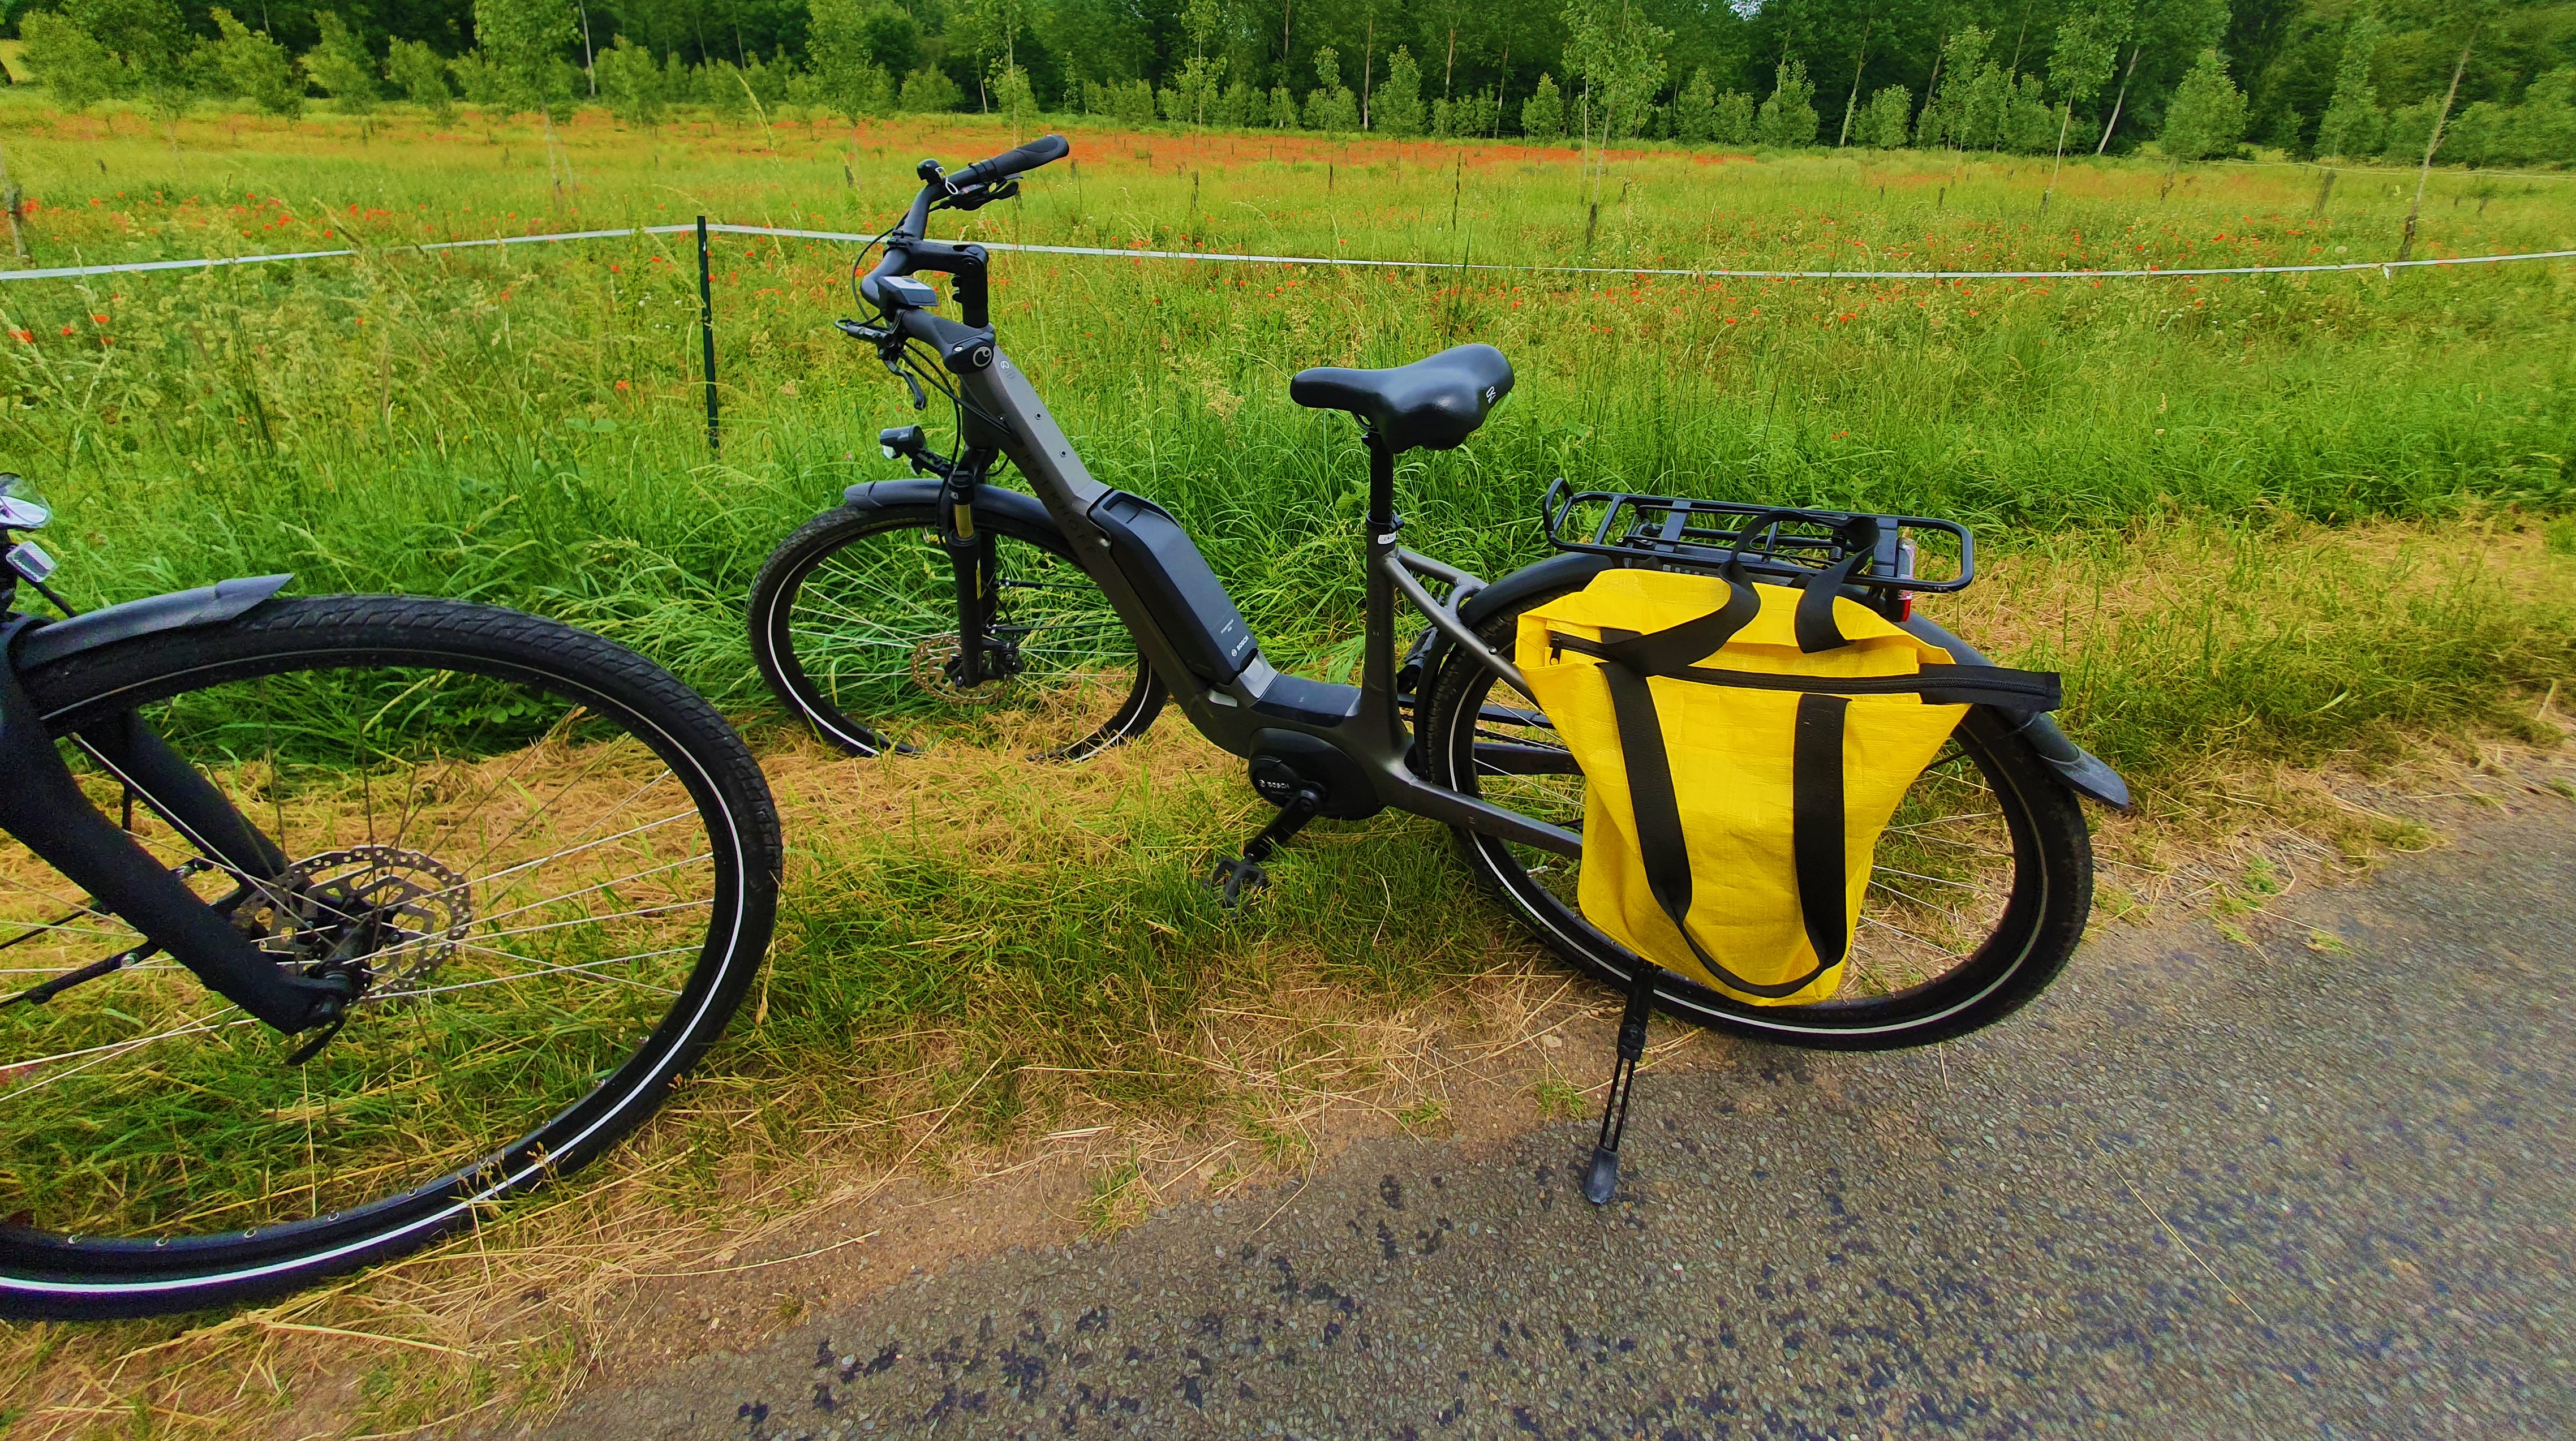 Balade champêtre vers de superbes et typiques villages du Périgord en vélo électrique !